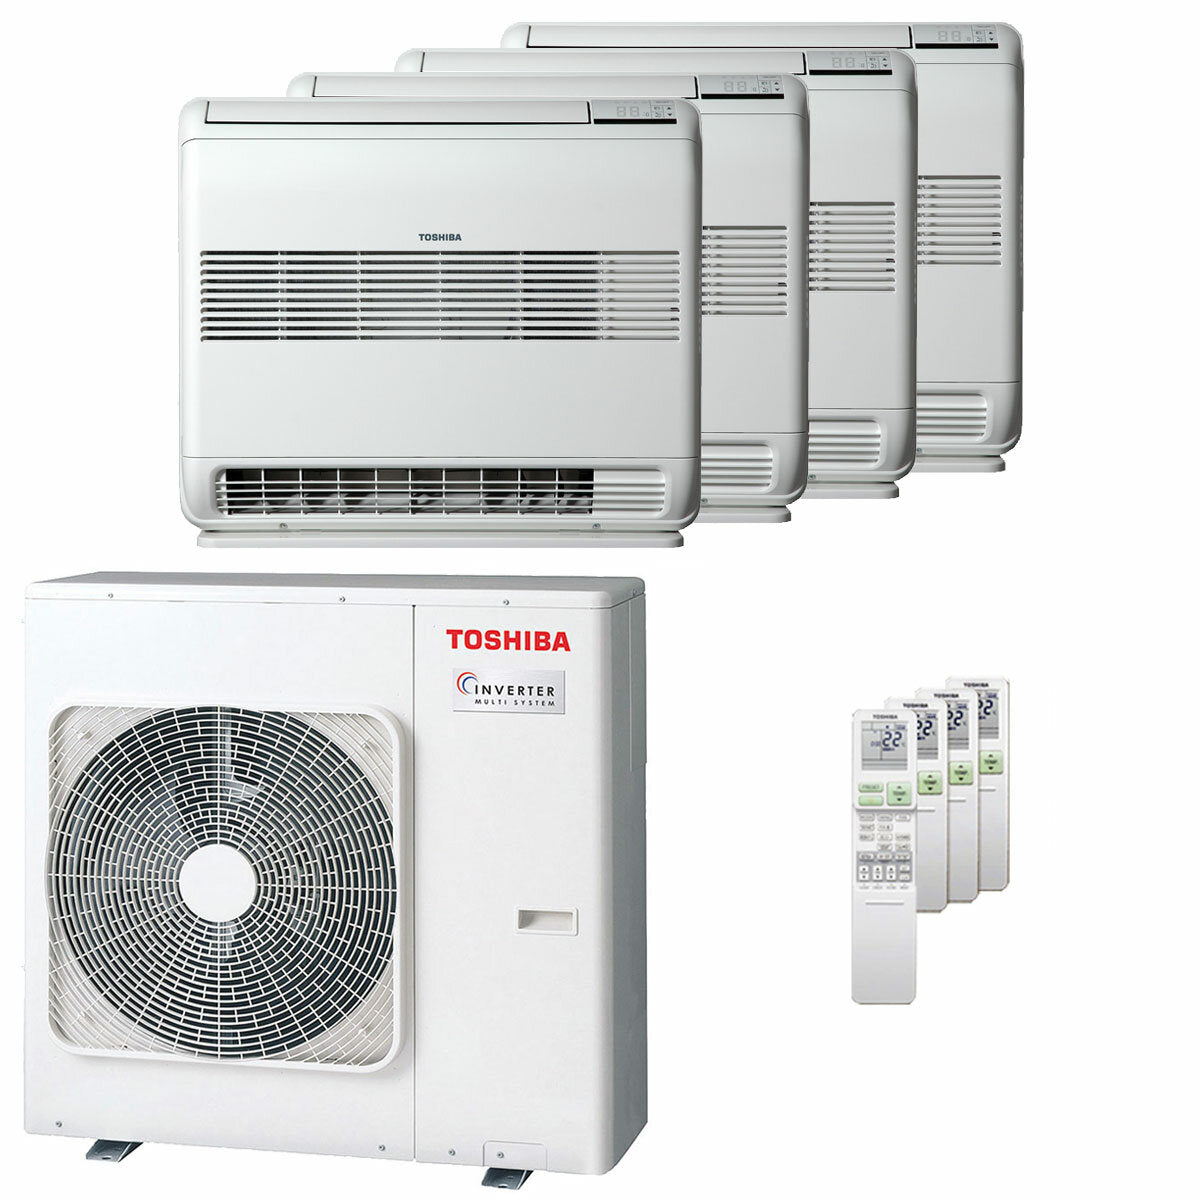 Toshiba Console J2 Klimaanlage, geteilte Panels, 9000+9000+12000+12000 BTU, Wechselrichter A++, Außeneinheit 8 kW 